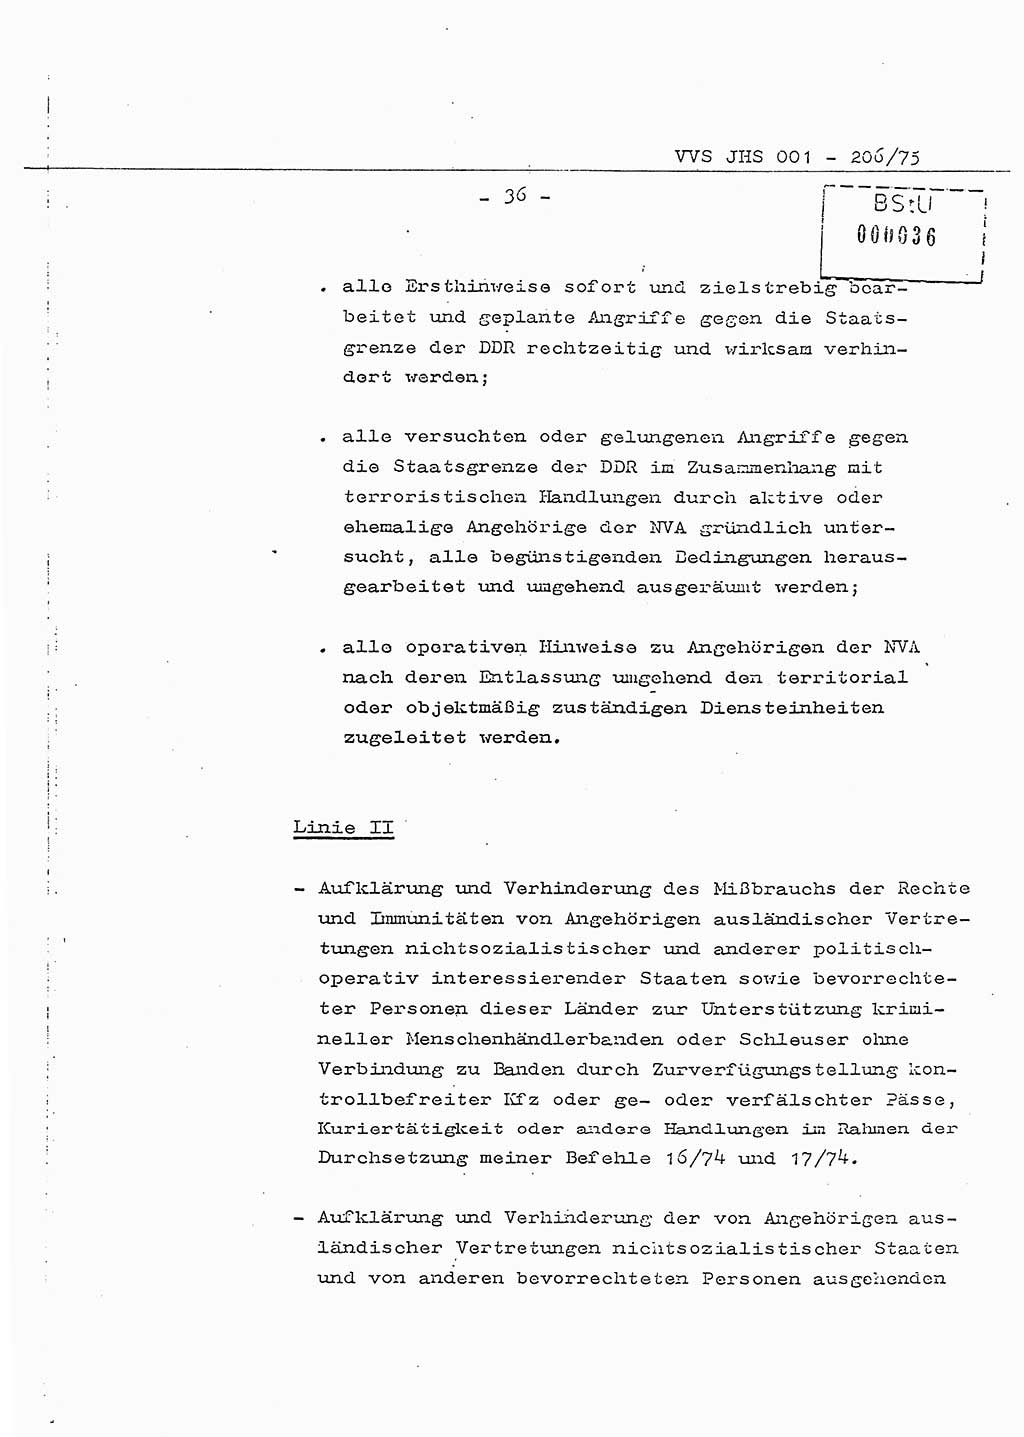 Dissertation Generalmajor Manfred Hummitzsch (Leiter der BV Leipzig), Generalmajor Heinz Fiedler (HA Ⅵ), Oberst Rolf Fister (HA Ⅸ), Ministerium für Staatssicherheit (MfS) [Deutsche Demokratische Republik (DDR)], Juristische Hochschule (JHS), Vertrauliche Verschlußsache (VVS) 001-206/75, Potsdam 1975, Seite 36 (Diss. MfS DDR JHS VVS 001-206/75 1975, S. 36)